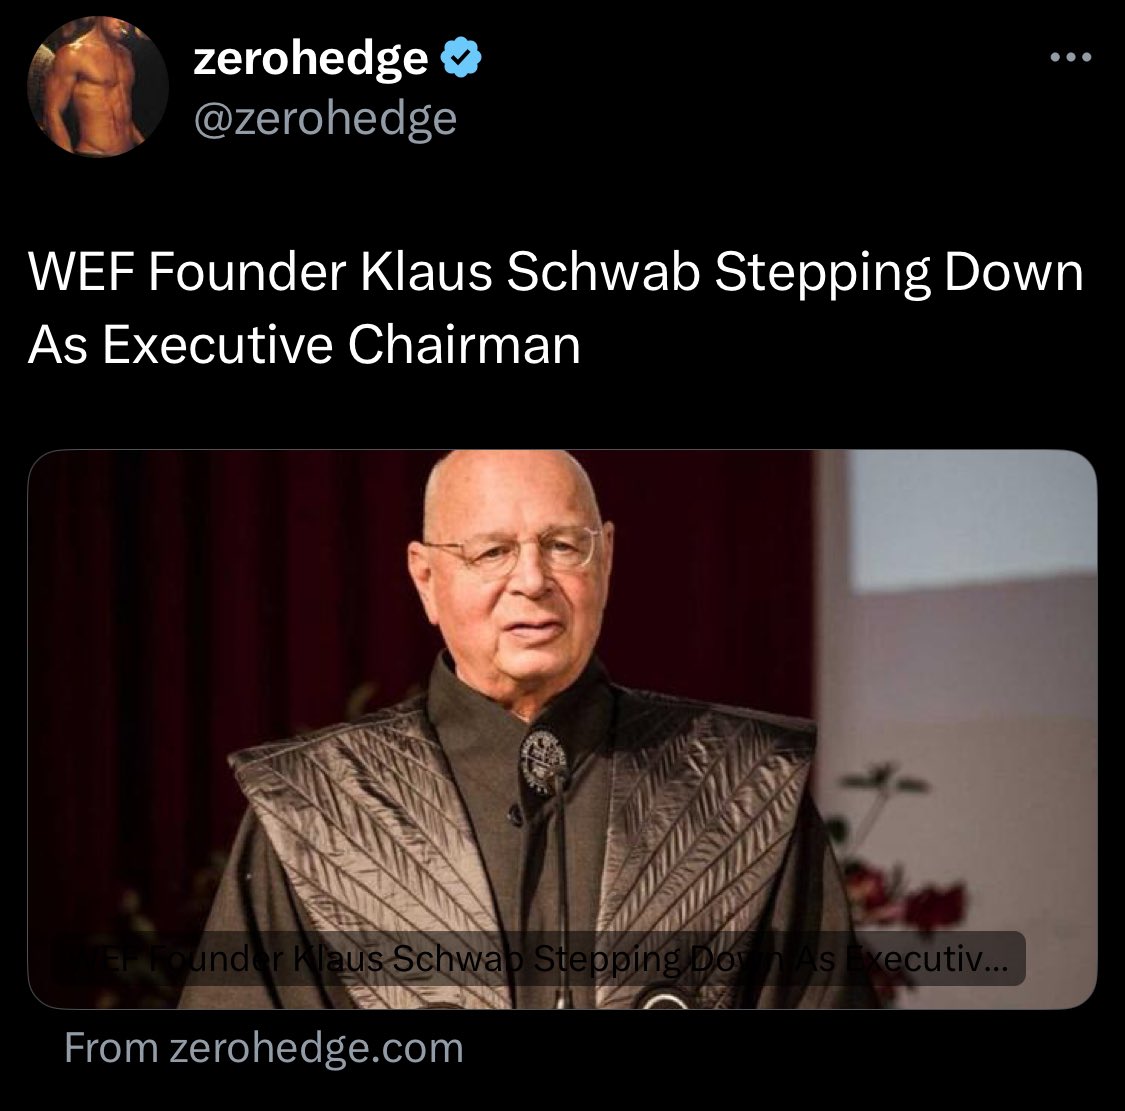 Klaus Schwab is retiring. 😢